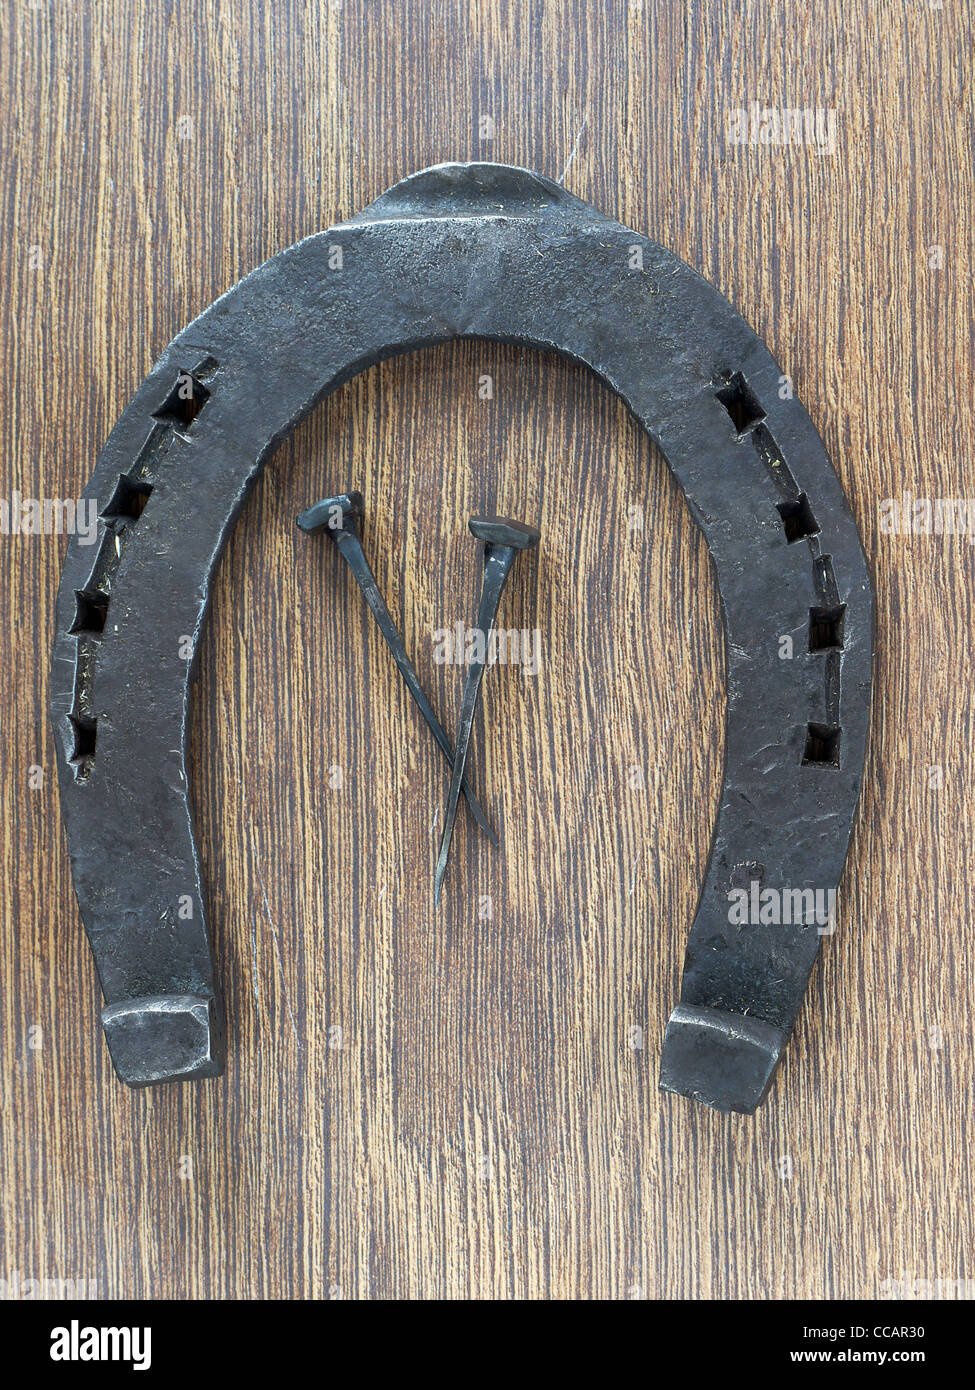 Horseshoe and two horseshoe nails on wooden plank Stock Photo